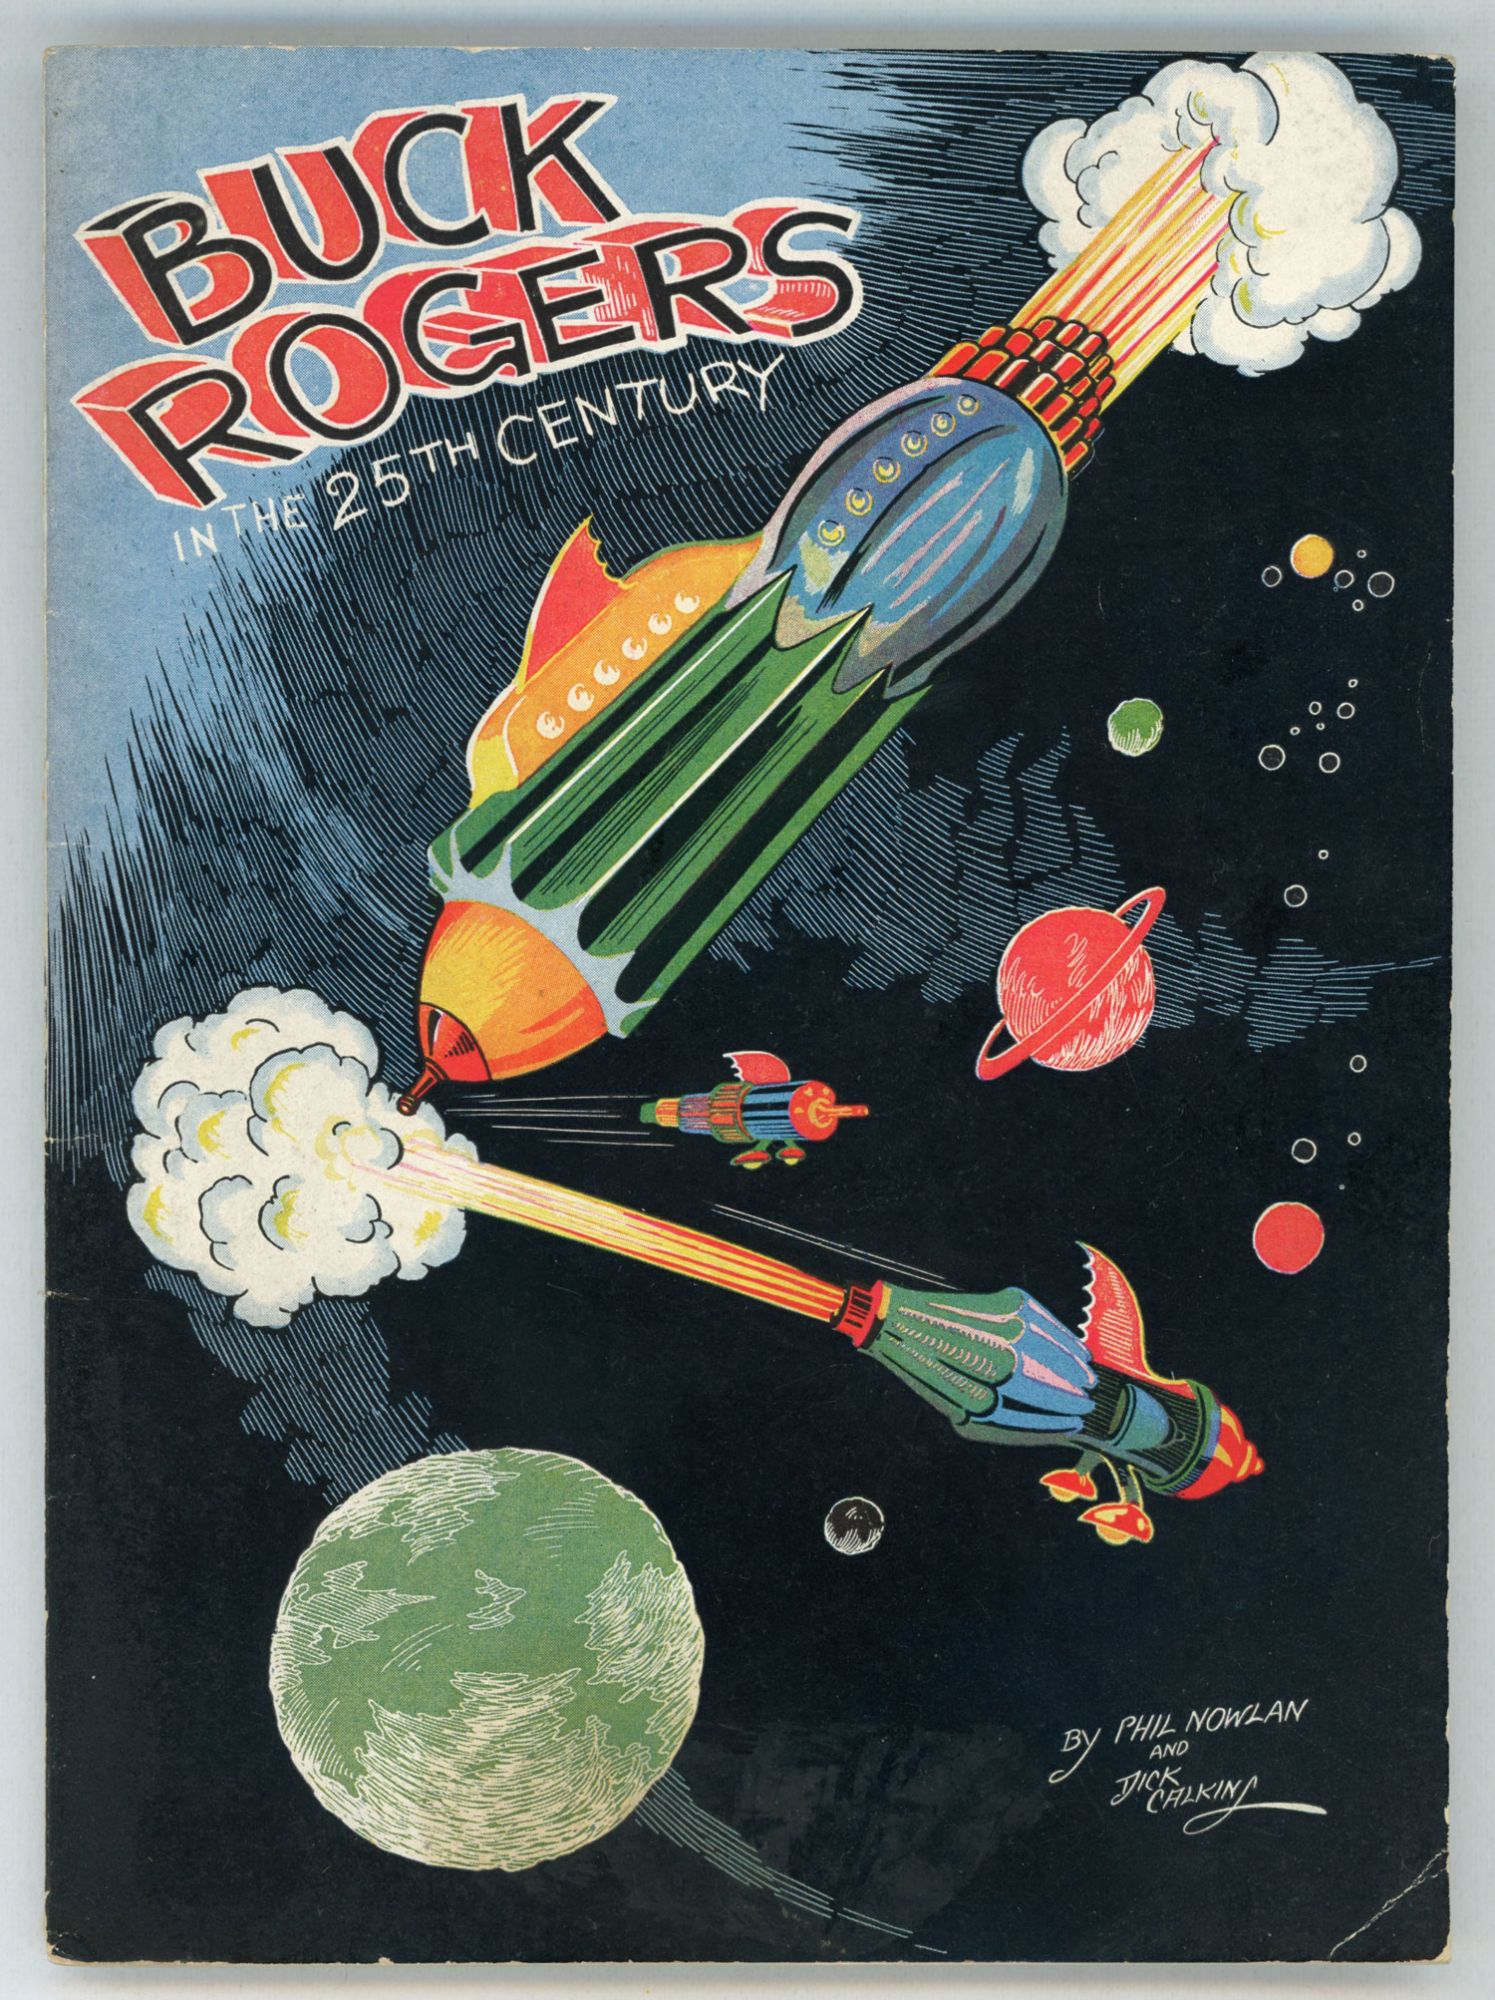 在庫大量 25世紀のバック・ロジャーズ 全集 第1巻「Buck Rogers」2008 ...